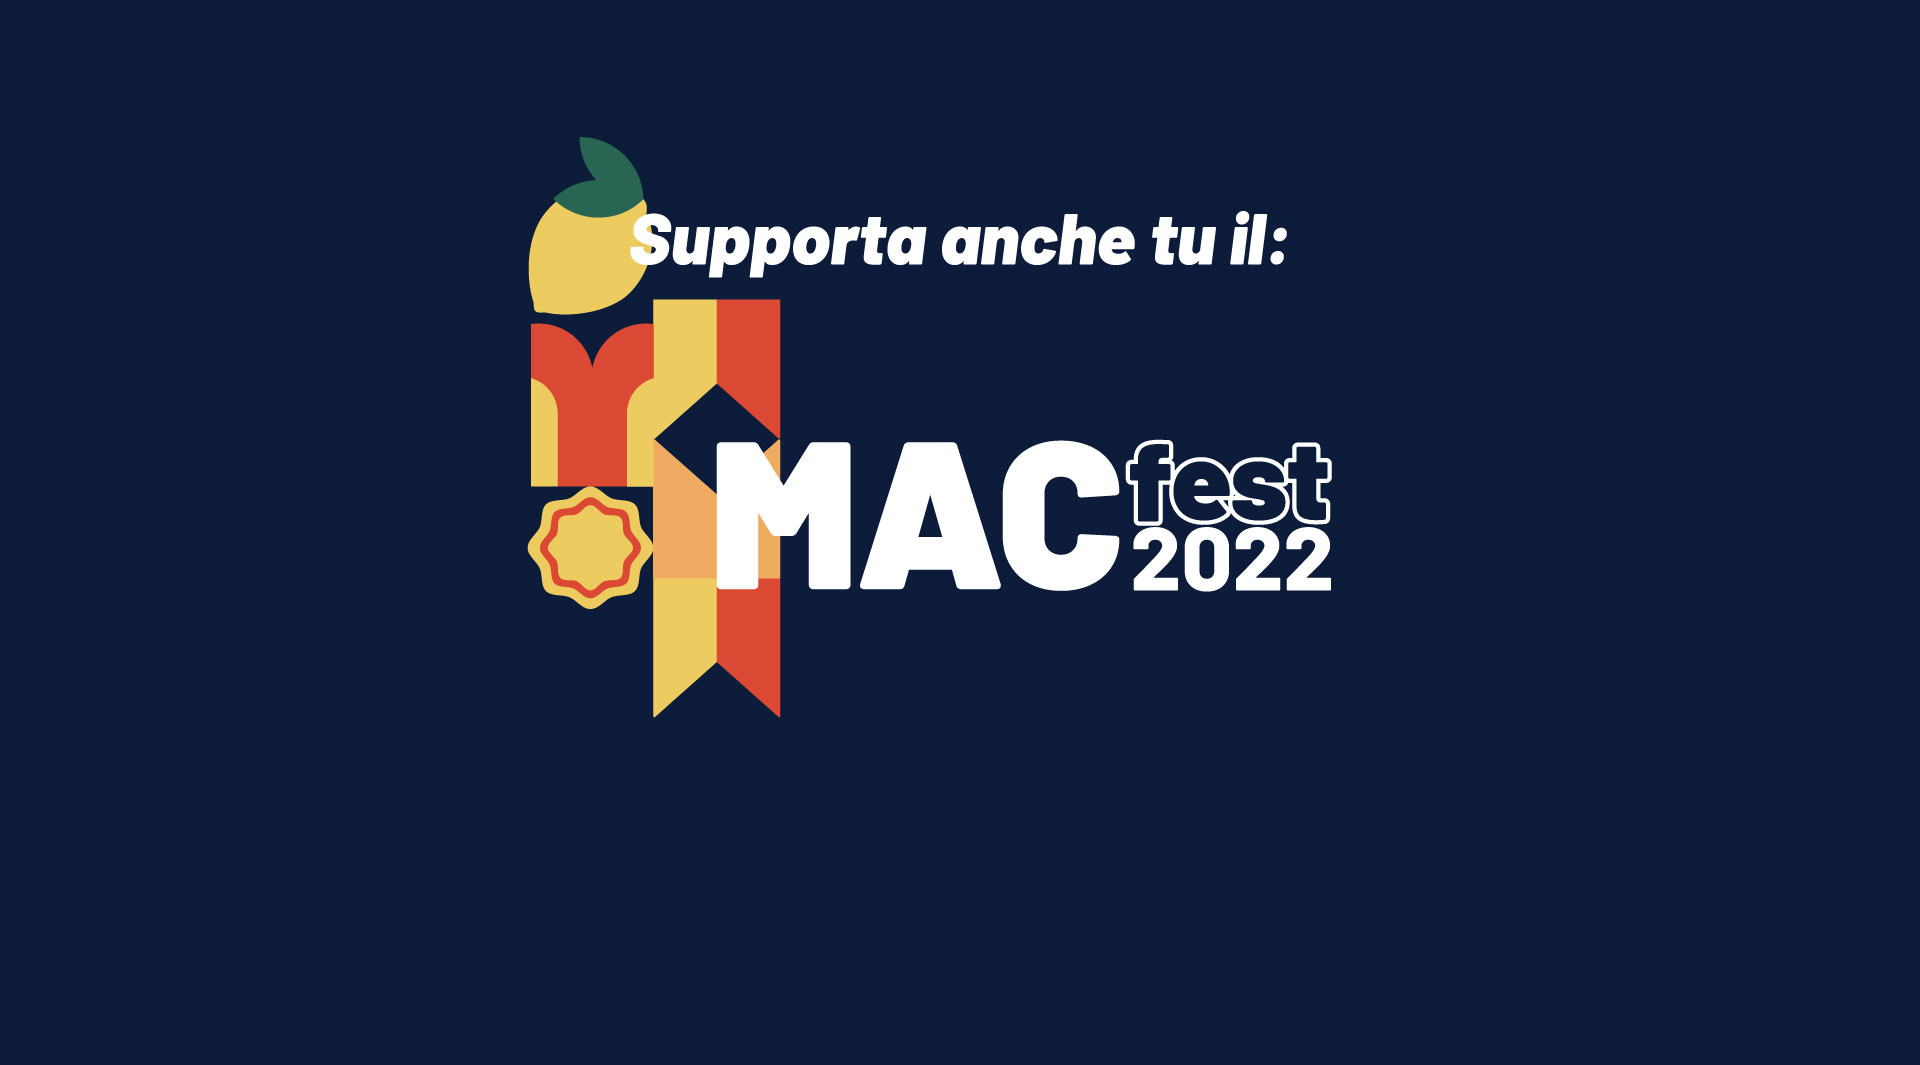 Aiutaci a realizzare il MAC fest 2022